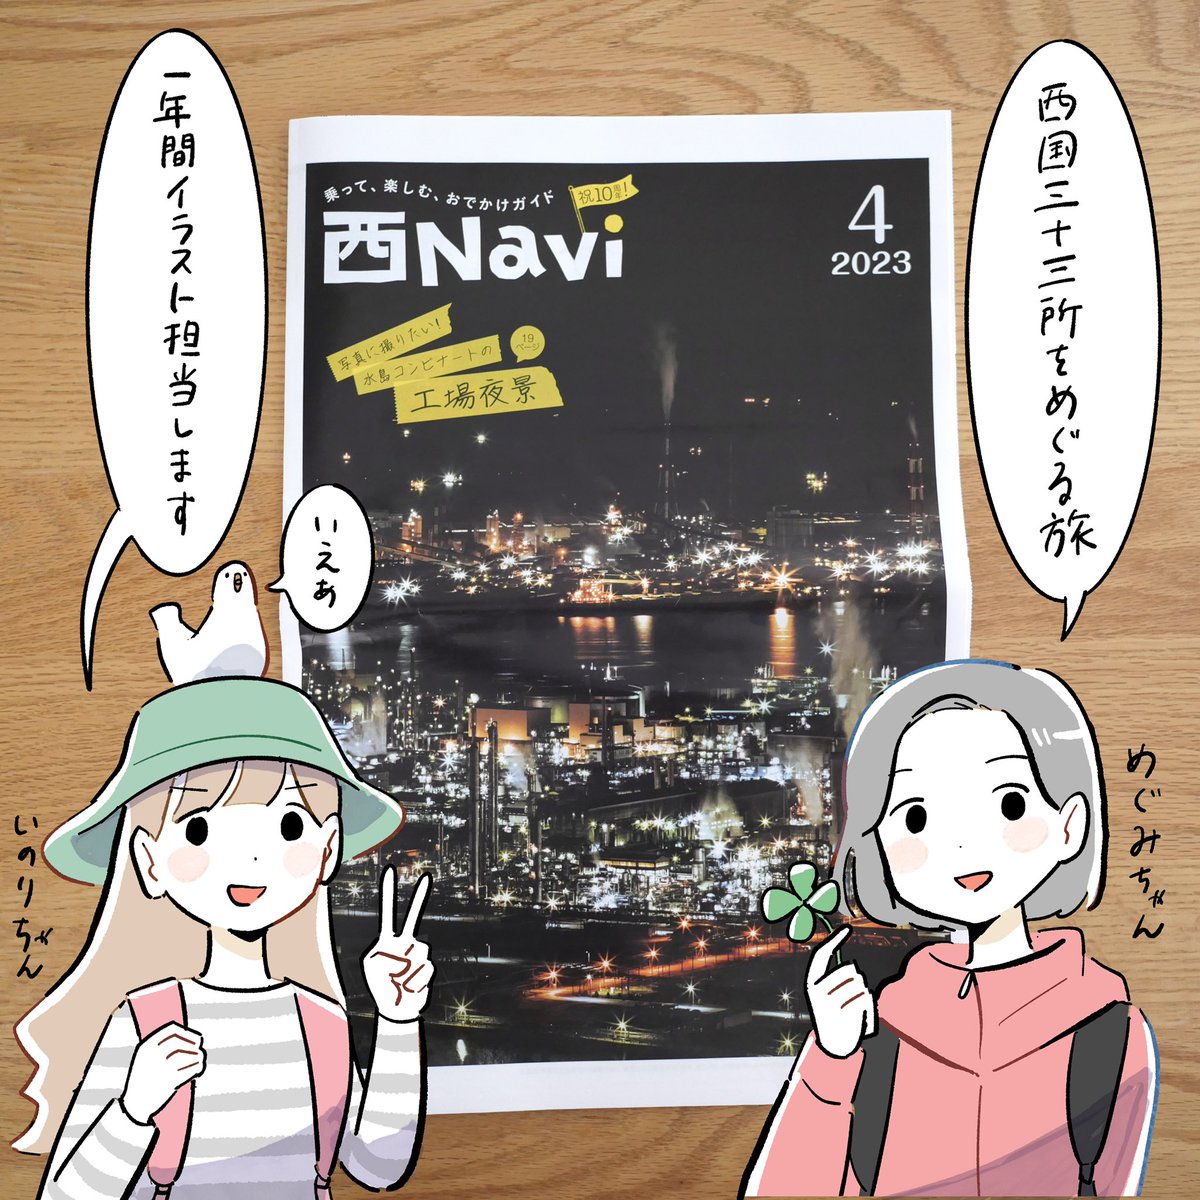 西Navi 4月号から「お寺大好きめぐみちゃんといのりちゃんとめぐる三十三所」のイラストを一年間担当します!
JR西日本の主な駅で配布中です。
よろしくお願いします!🚃 